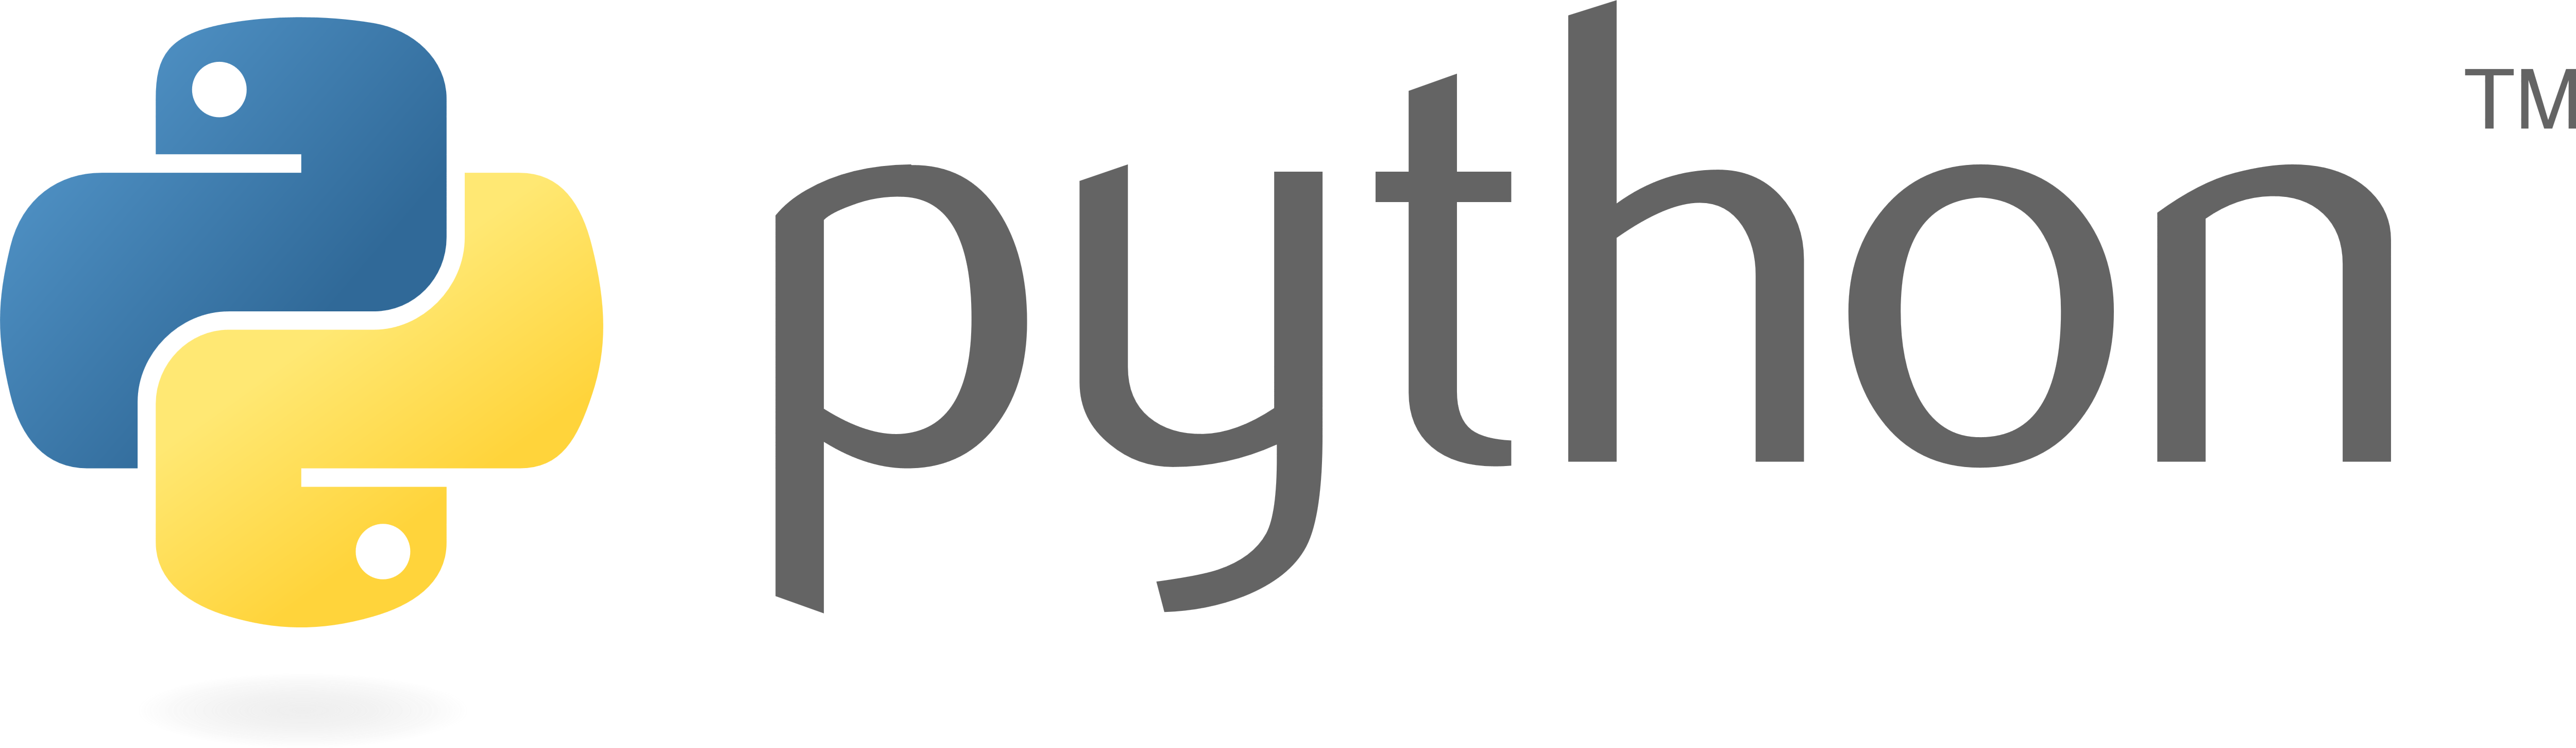 pythin download